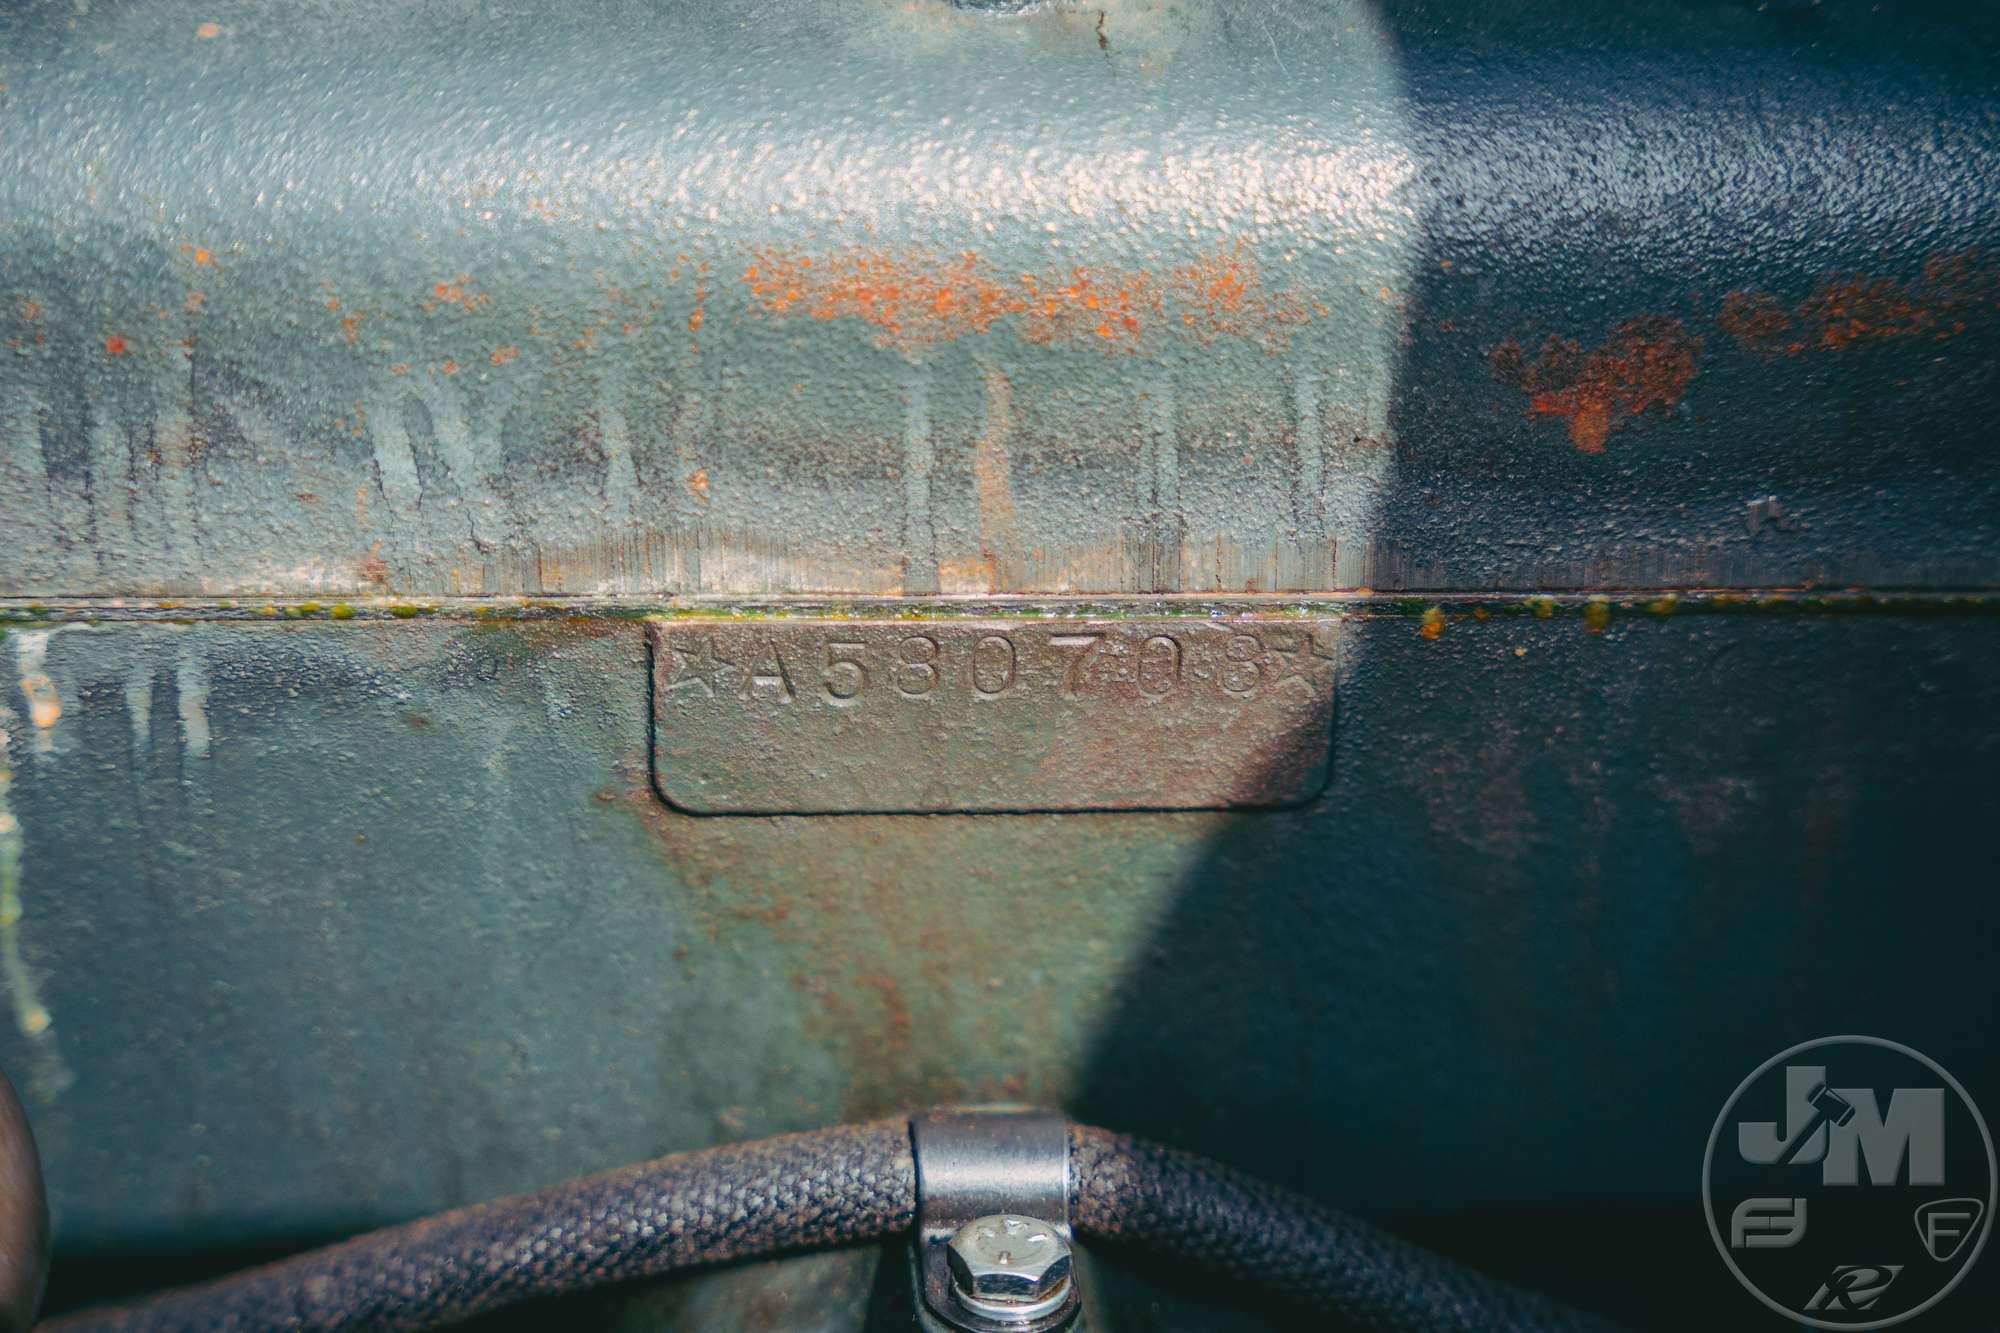 1928 FORD MODEL A ROADSTER VIN: A1221887 STEEL WIRE WHEELS